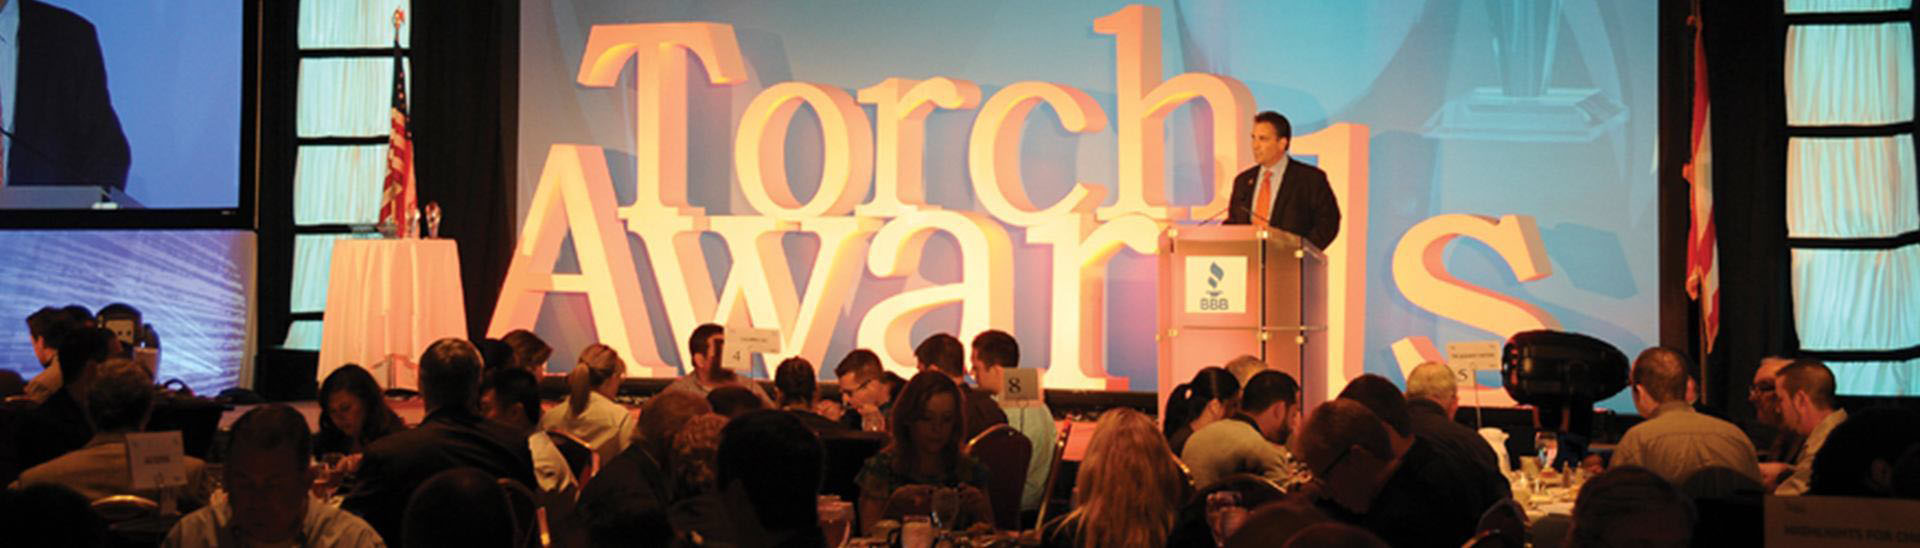 BBB Torch Award Website Event